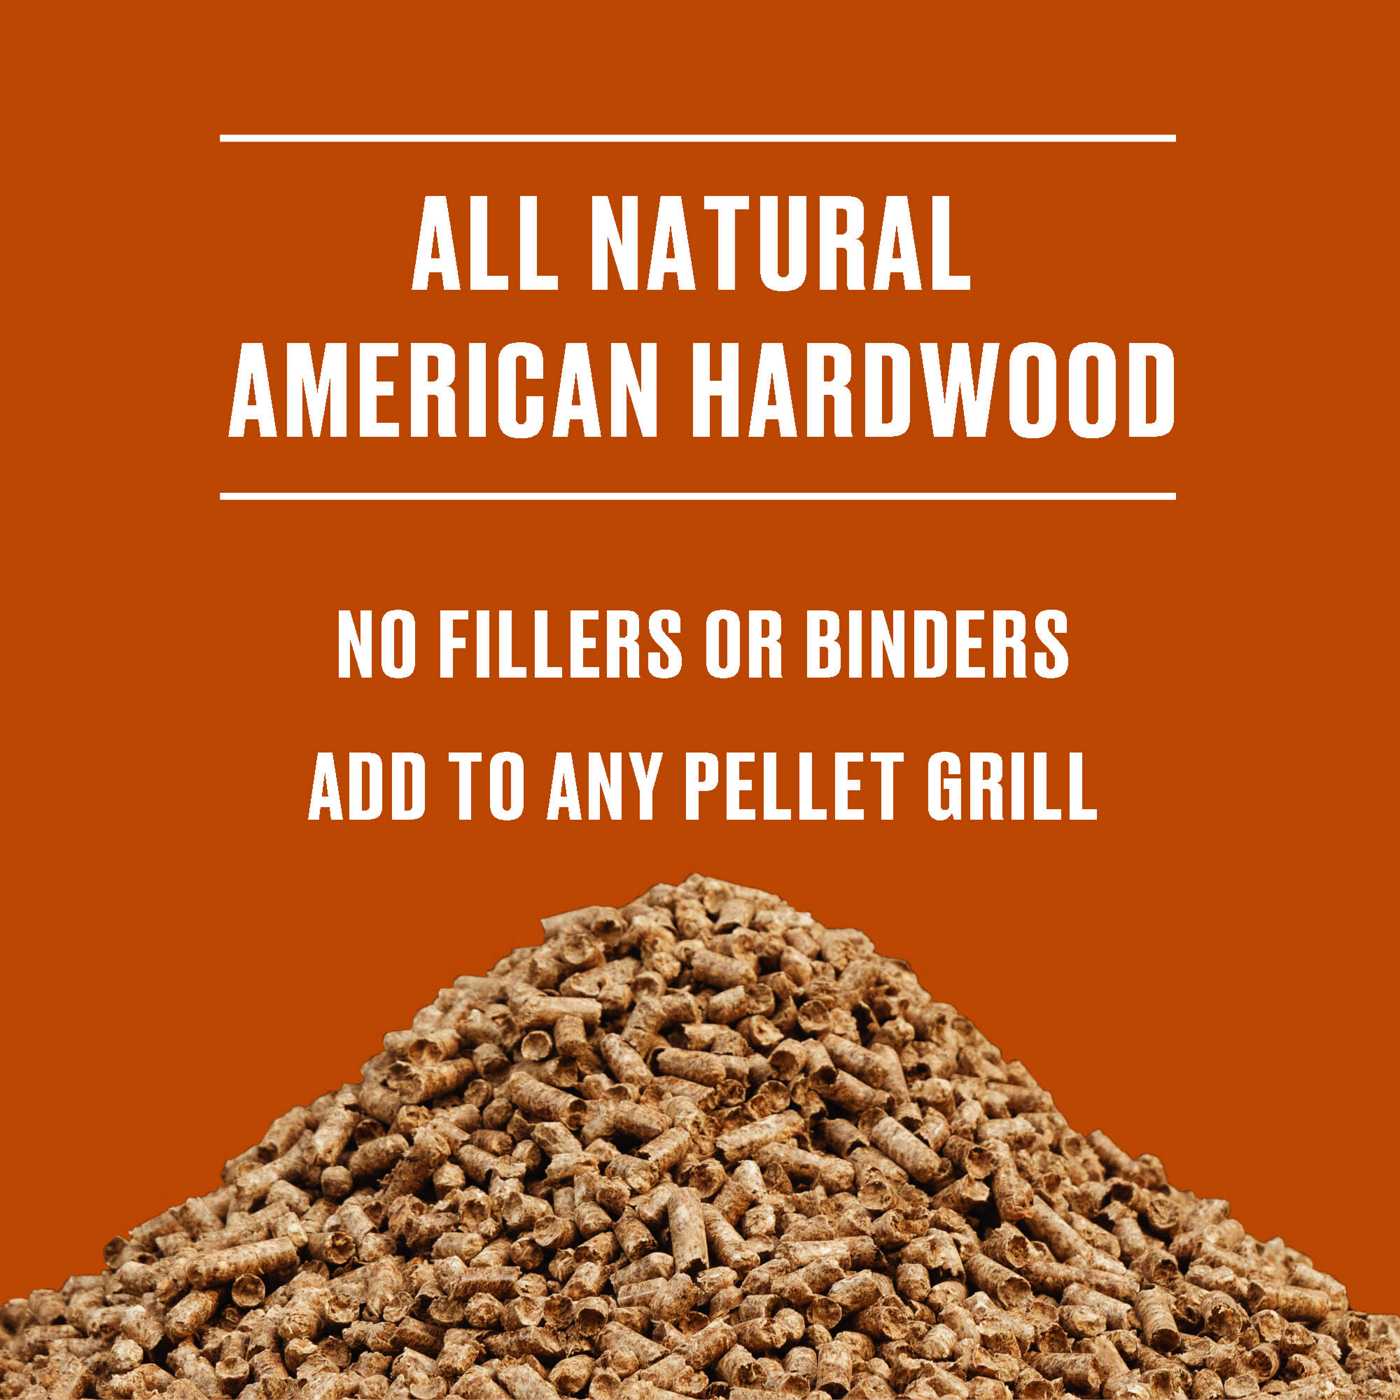 Kingsford 100% Natural Hardwood Blend Pellets, Southwest Blend, Mesquite, Cherry and Oak; image 4 of 5